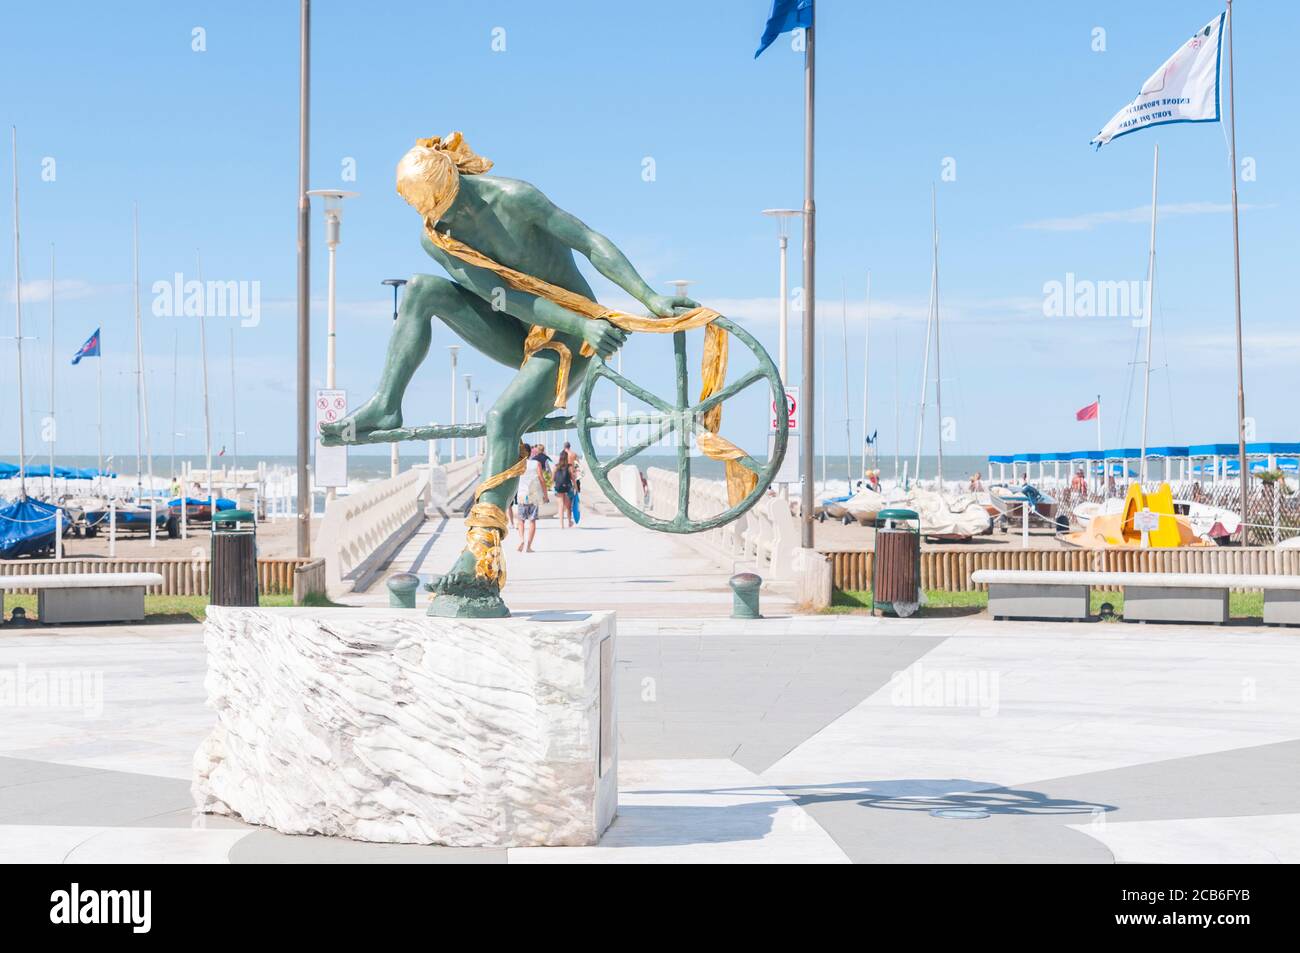 Forte dei Marmi, Italien - 4. August 2020 - die Statue Controvento oder Ulysses von Anna Chromy am Eingang zum Pier auf dem Meer Stockfoto